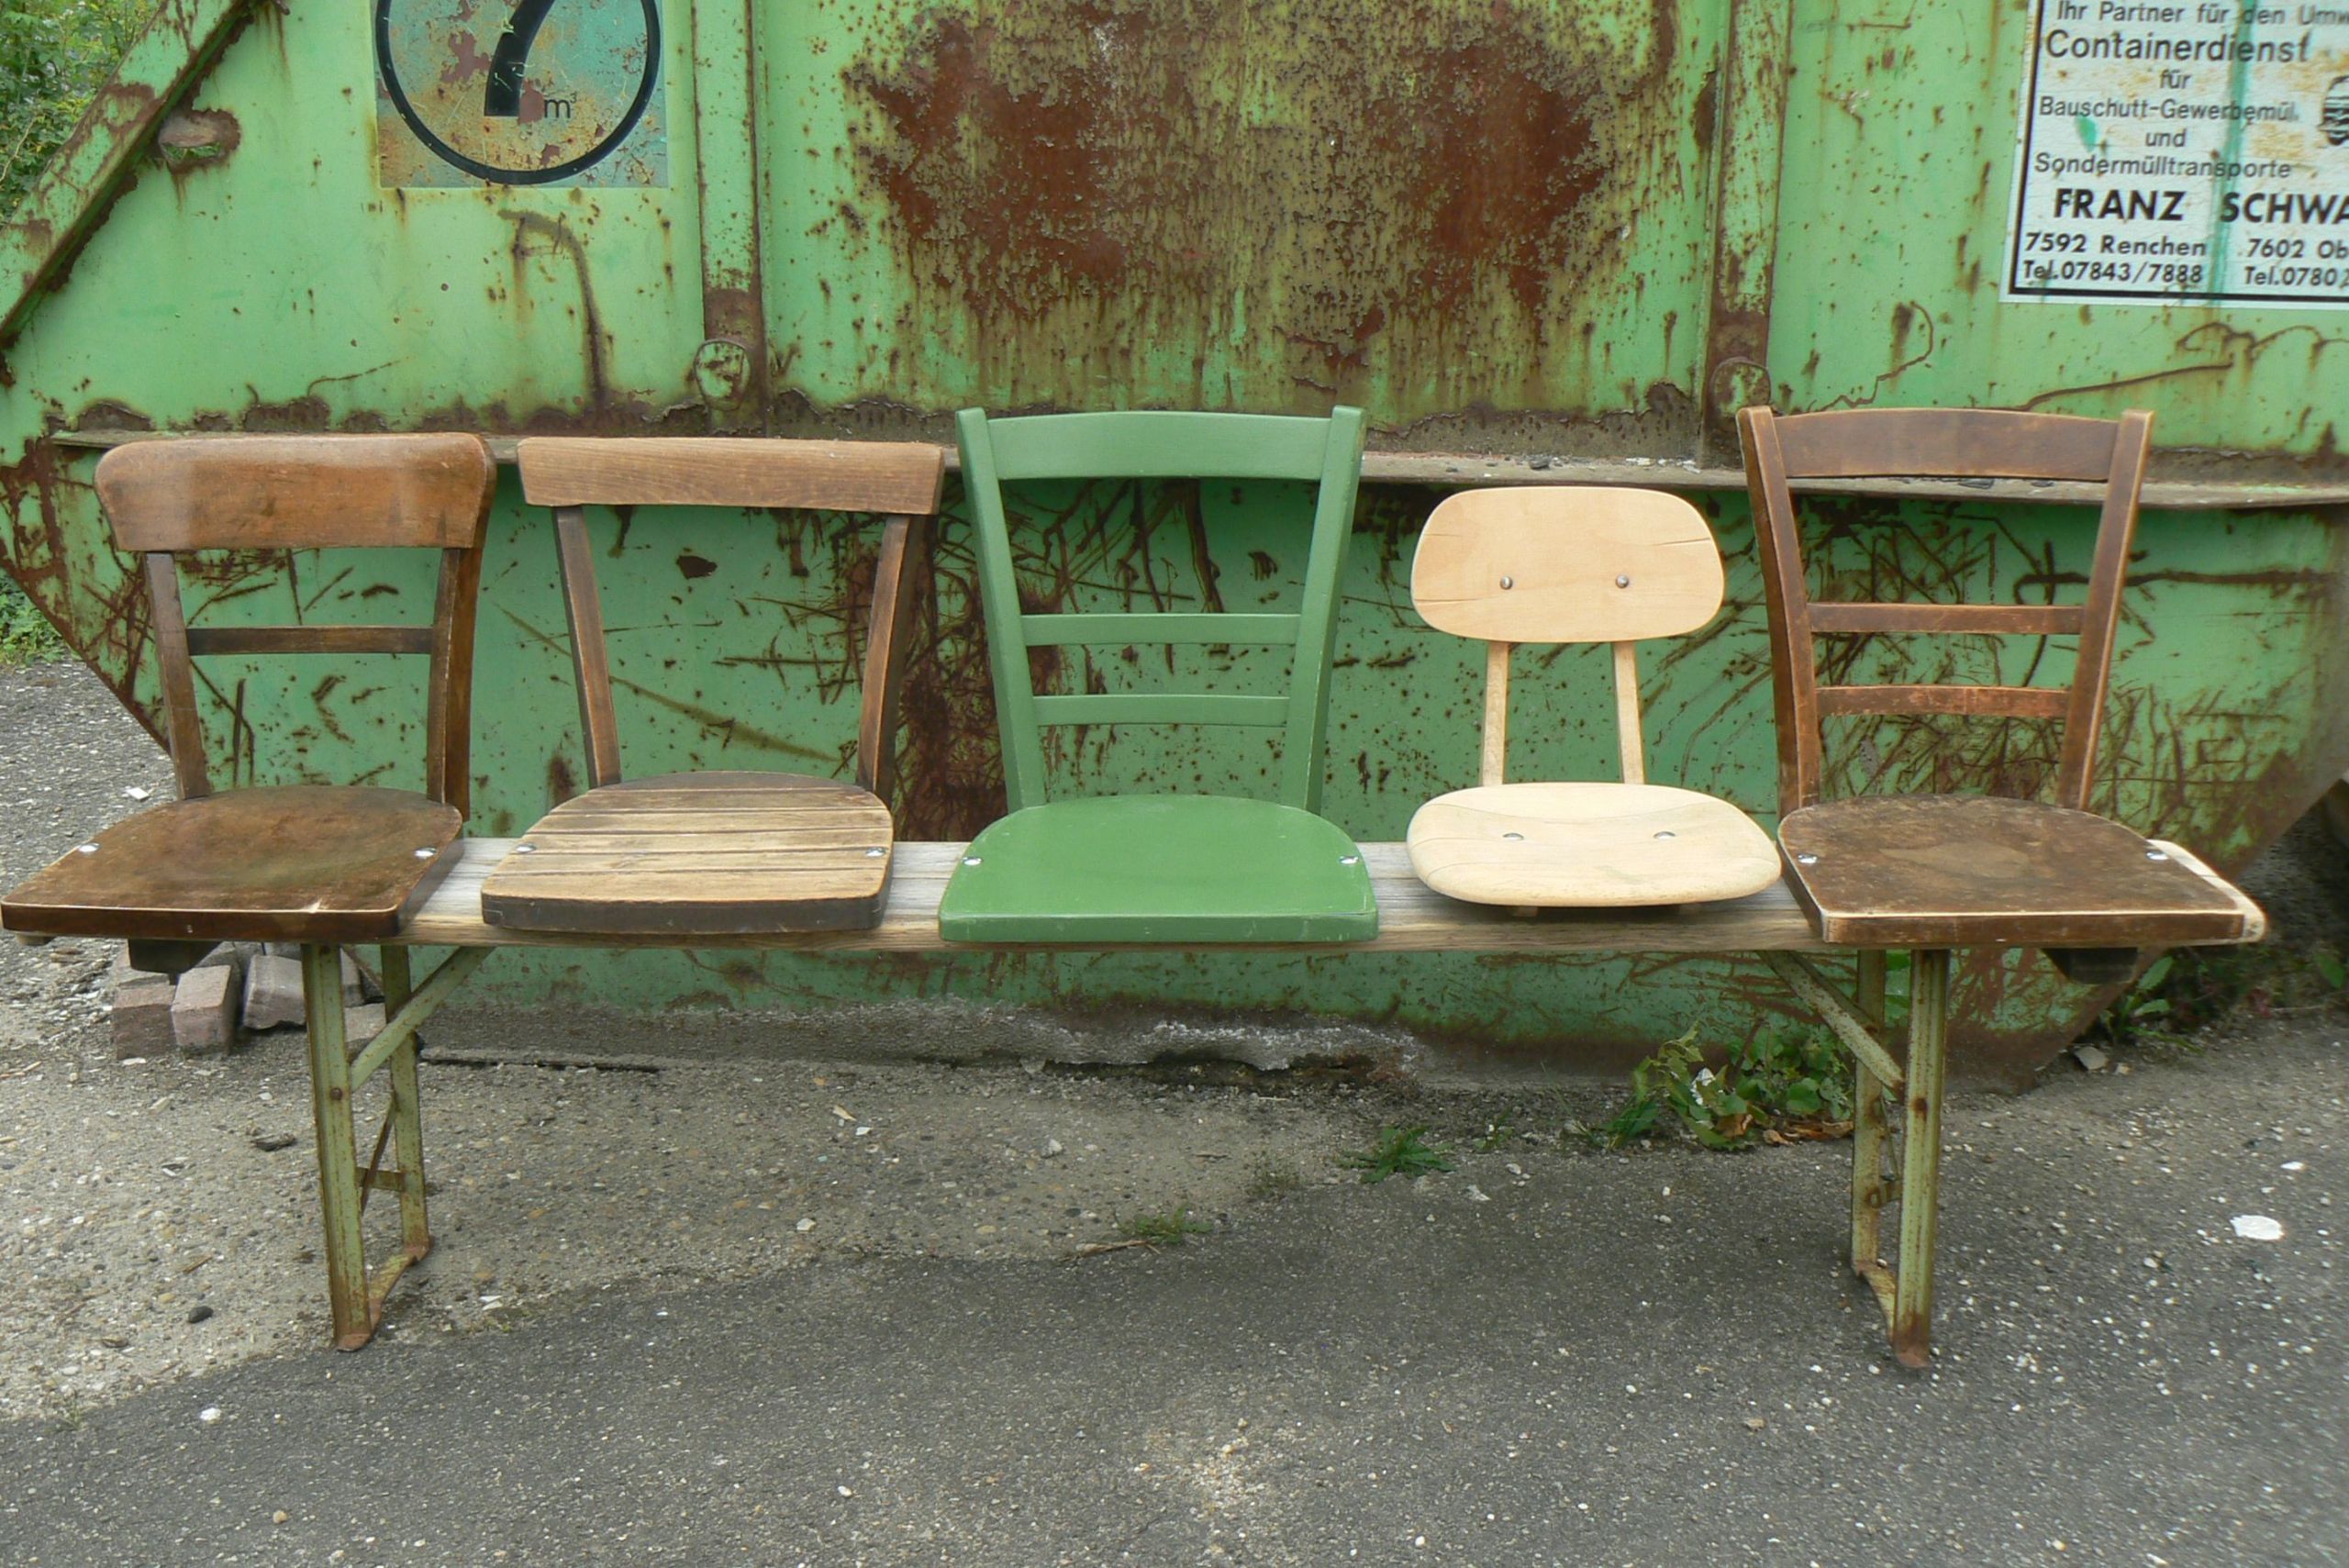 Origineller Sichtschutz Selber Machen Inspirierend Stühle Auf Einer Bierbank Sehr originell Diy